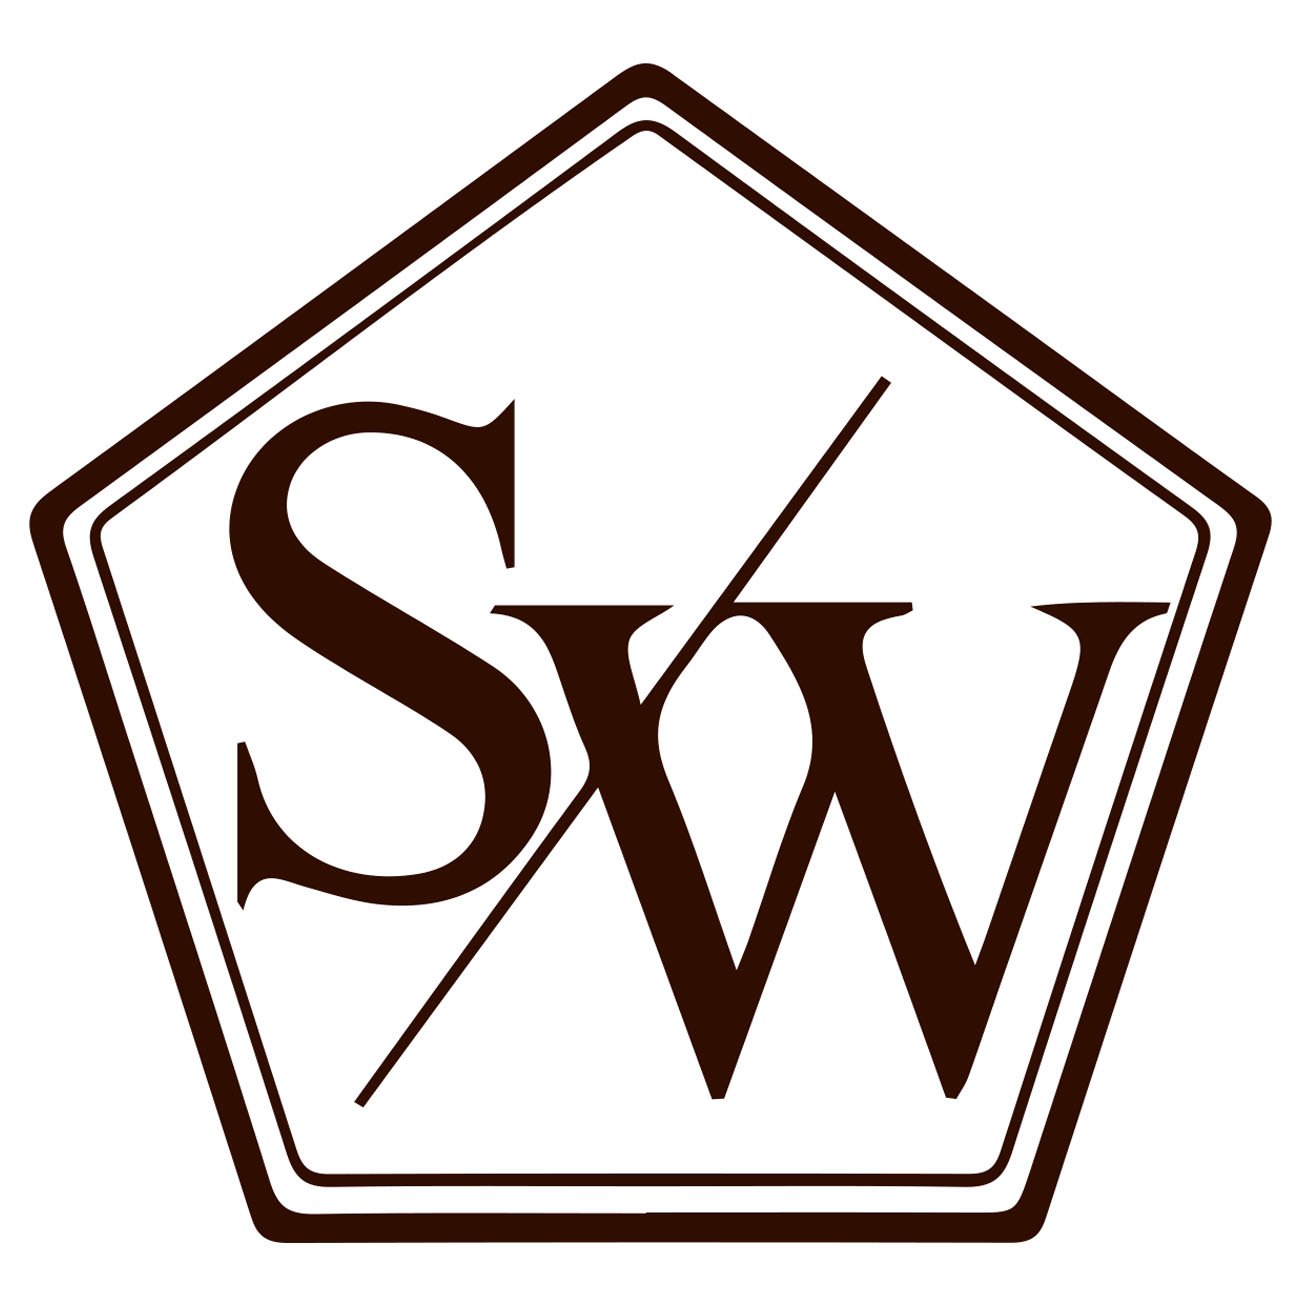 Stance Works logo 3